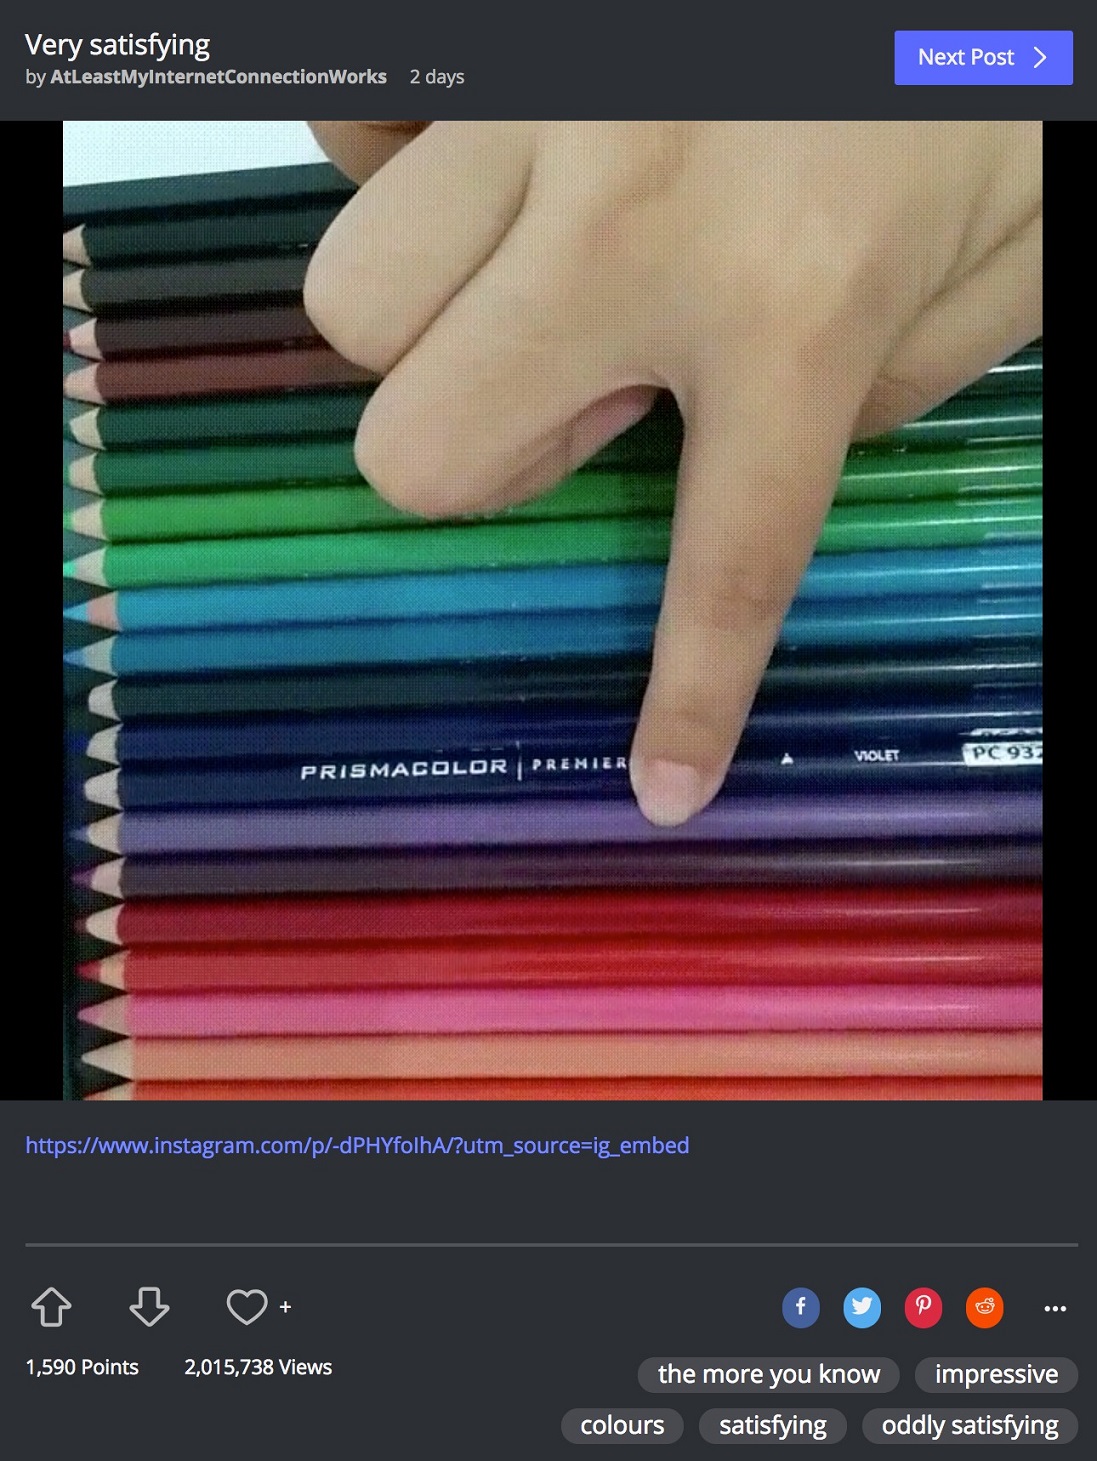 کمپین بازاریابی ویروسی شرکت Prismacolor تولید کننده مداد رنگی